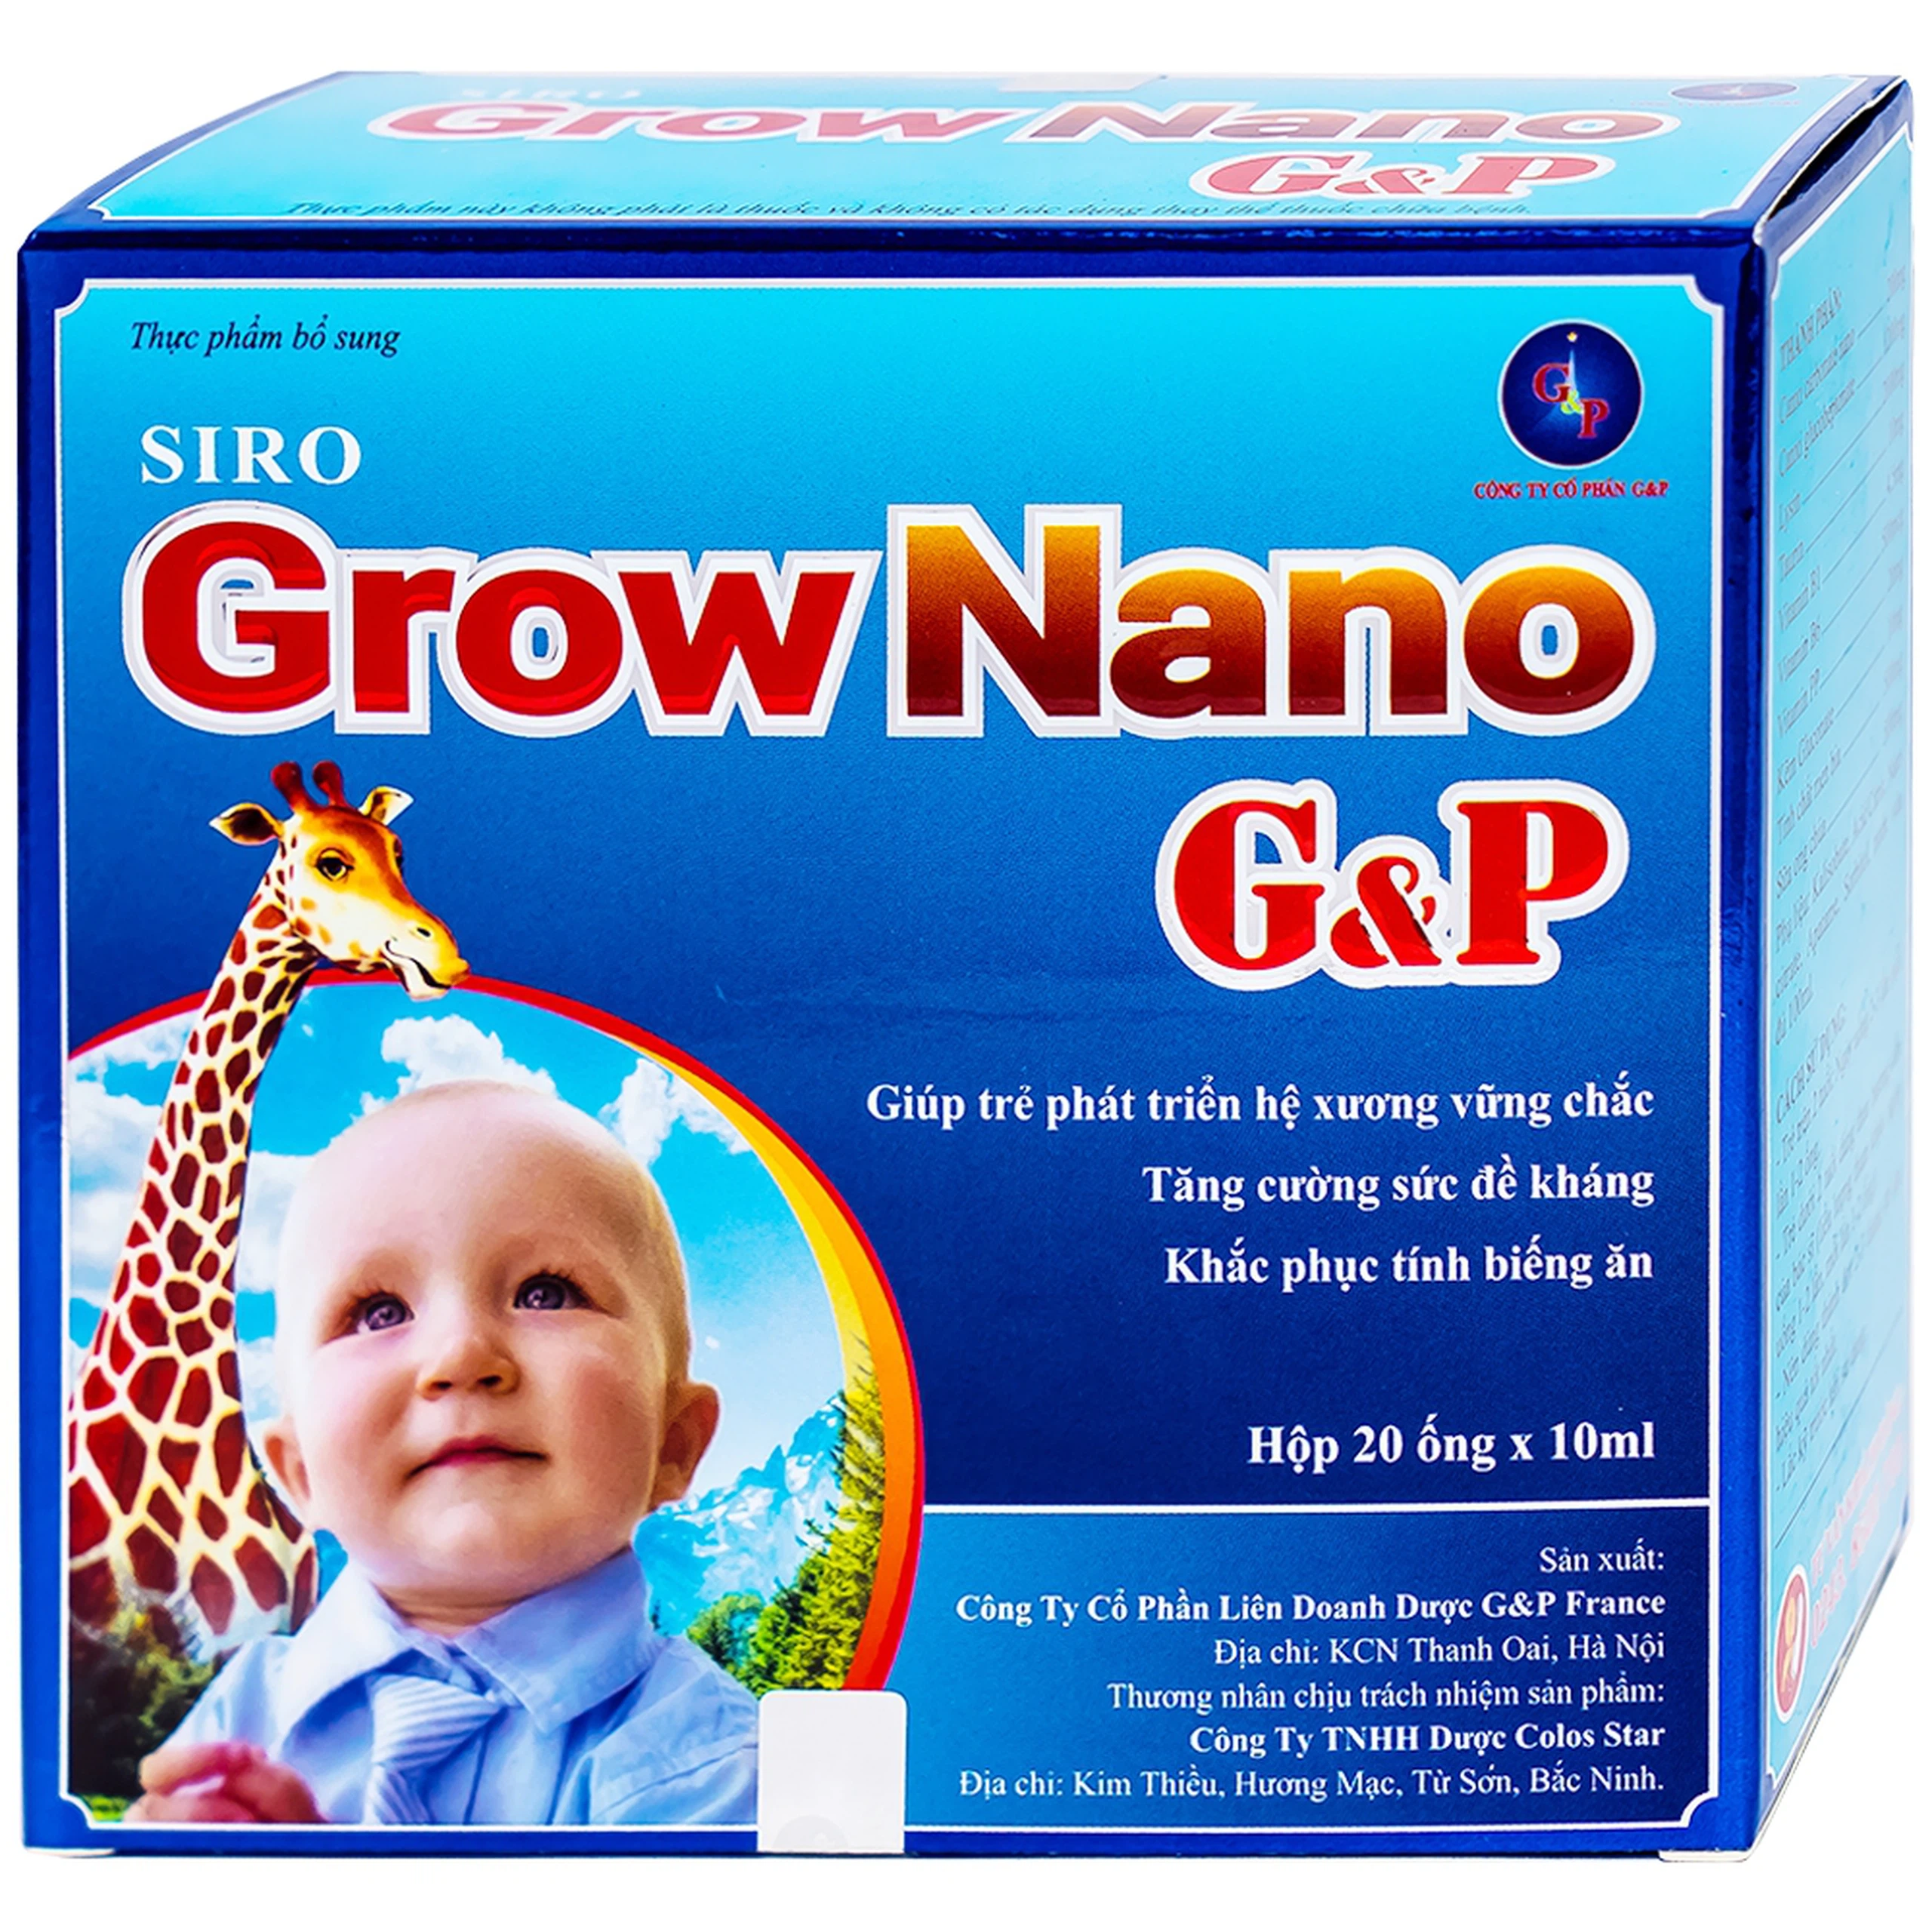 Siro Grow Nano G&P giúp trẻ phát triển hệ xương, tăng cường đề kháng (20 ống x 10ml)